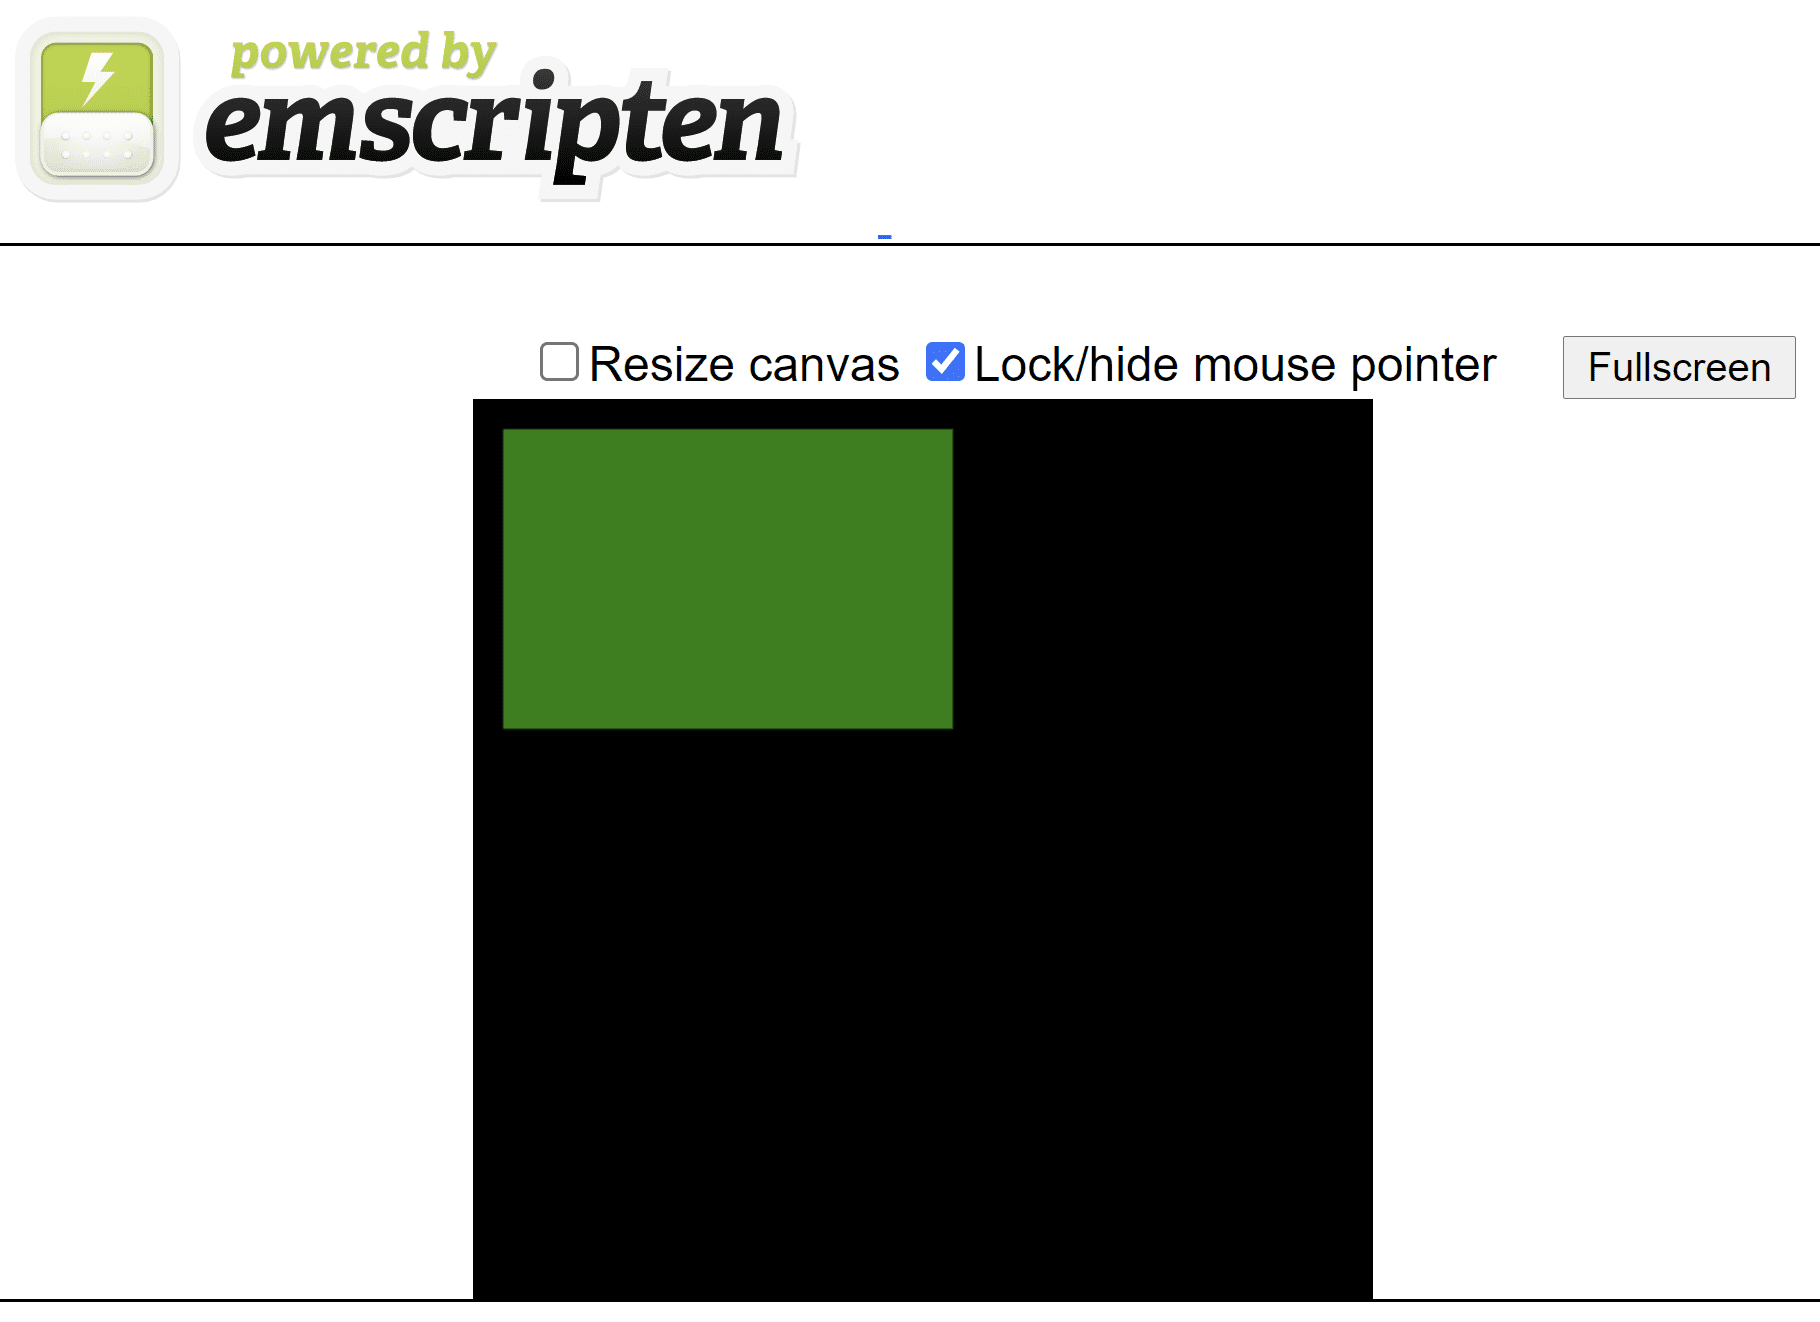 Página HTML gerada pelo Emscripten mostrando um retângulo verde em uma tela quadrada preta.